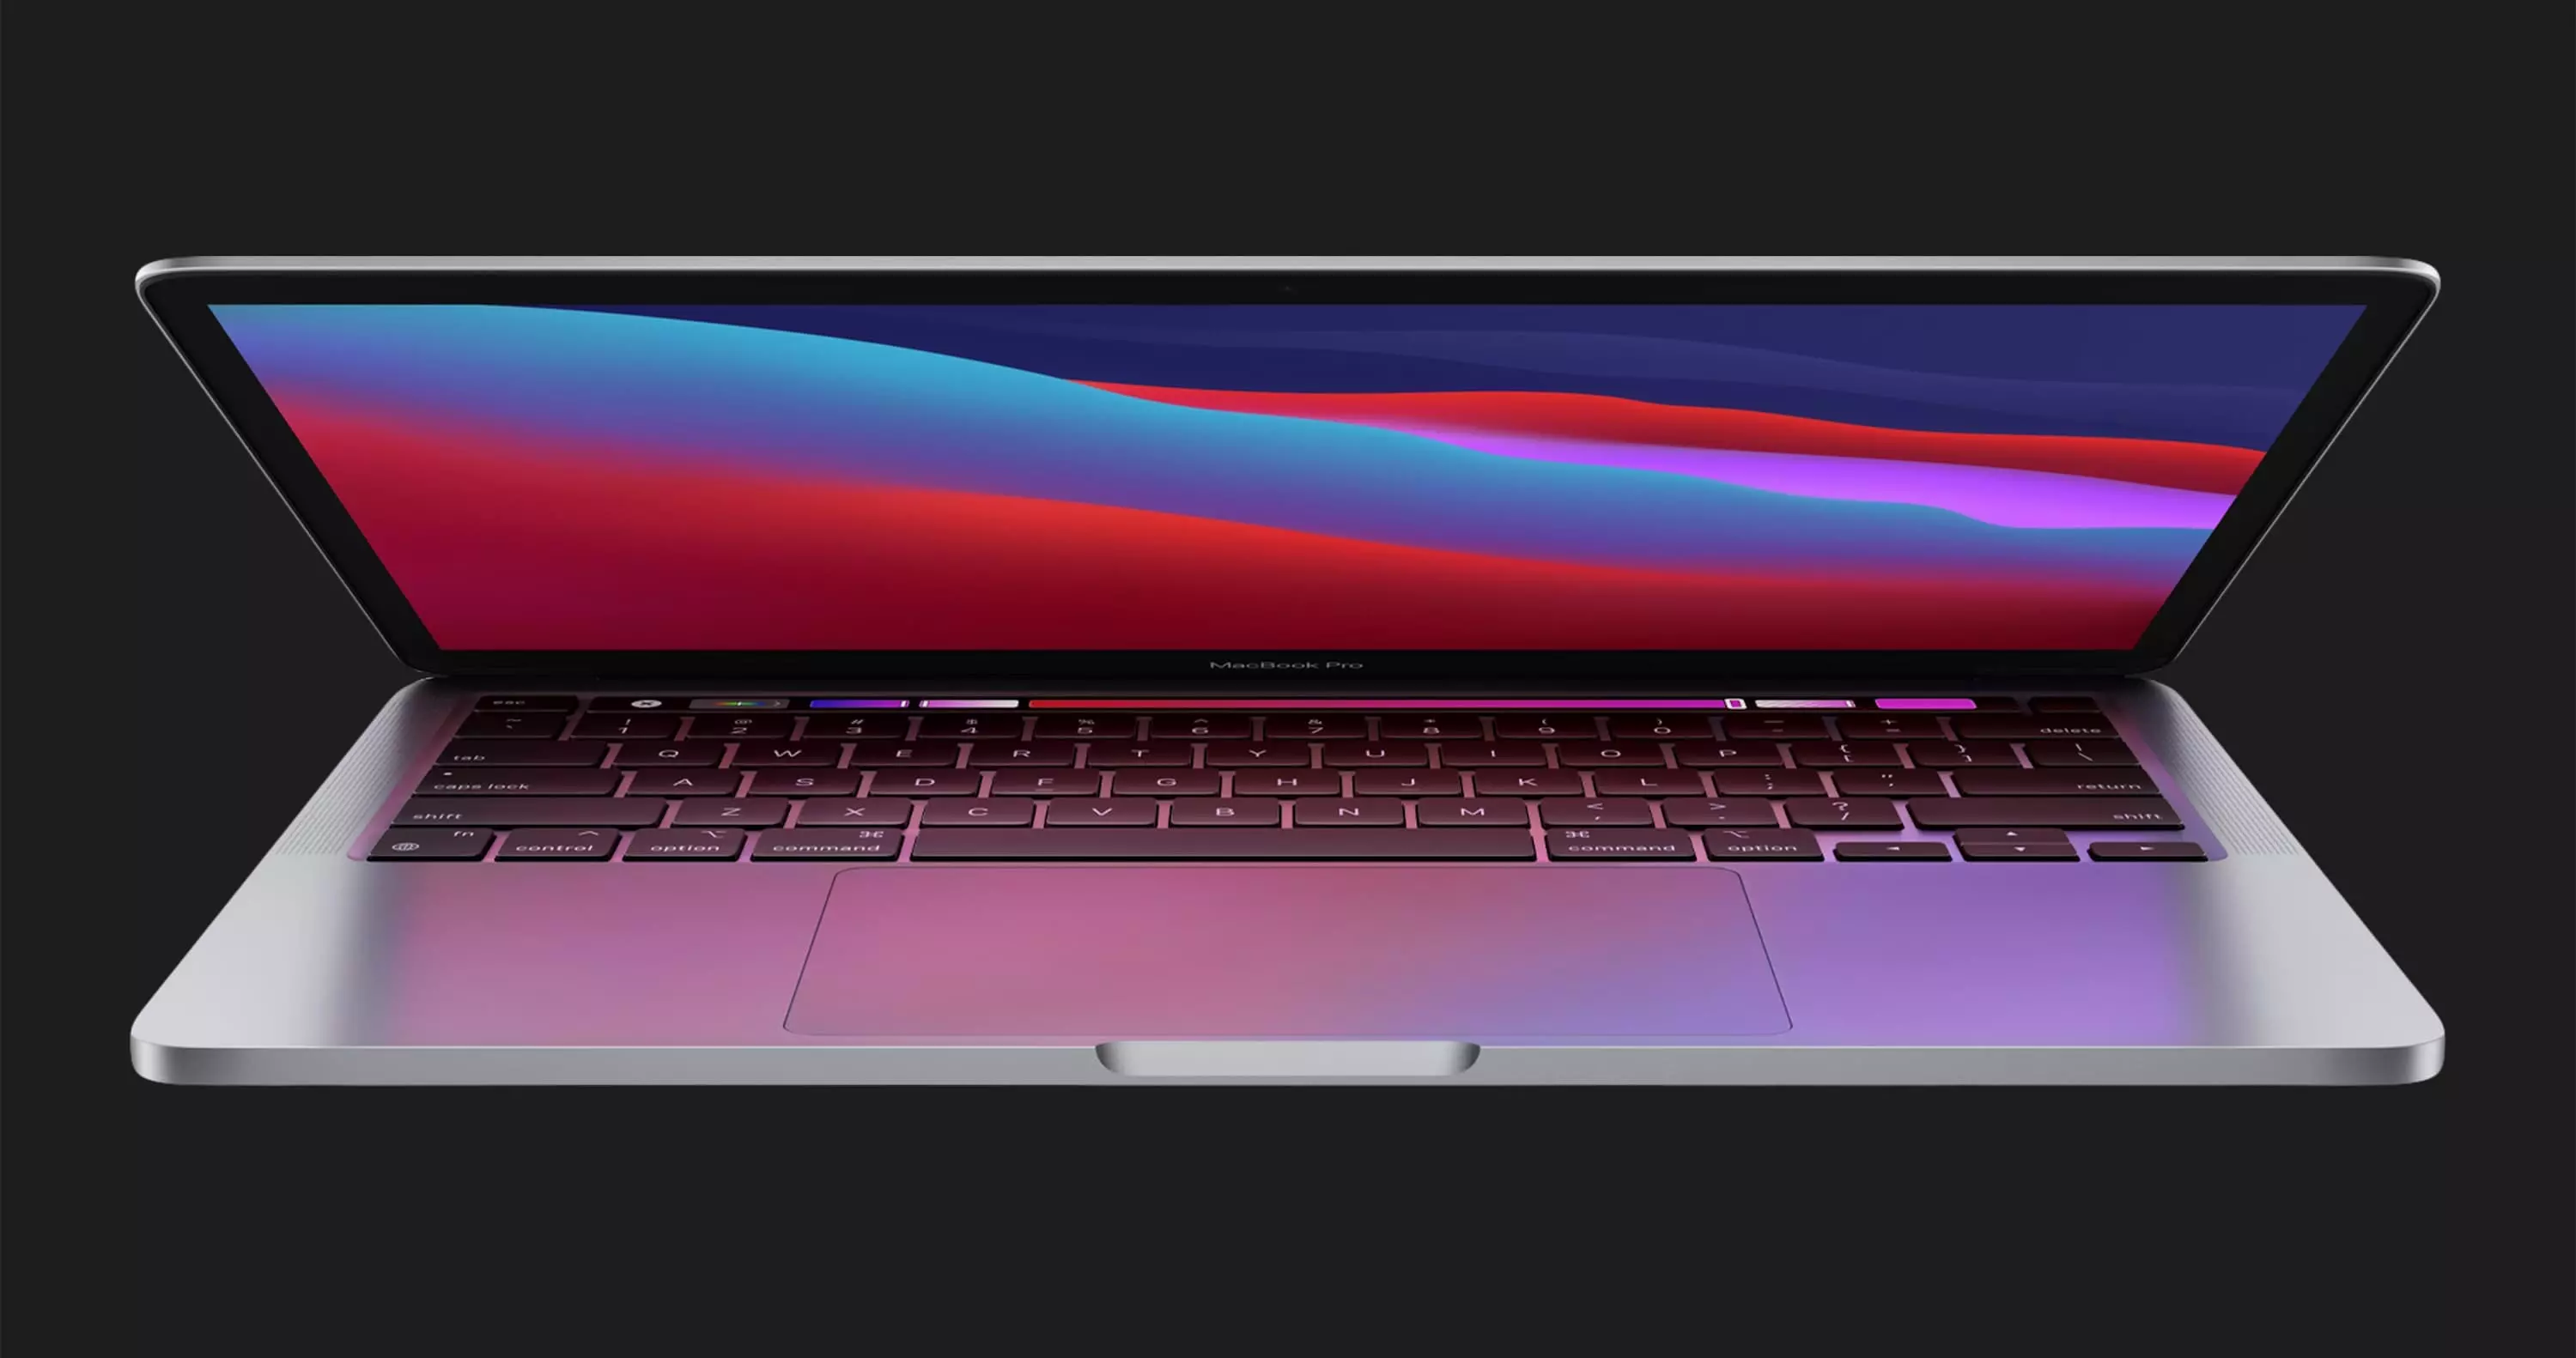 б/у Apple MacBook Pro 13, 2019 (256GB) (MUHP2) (Идеальное состояние)